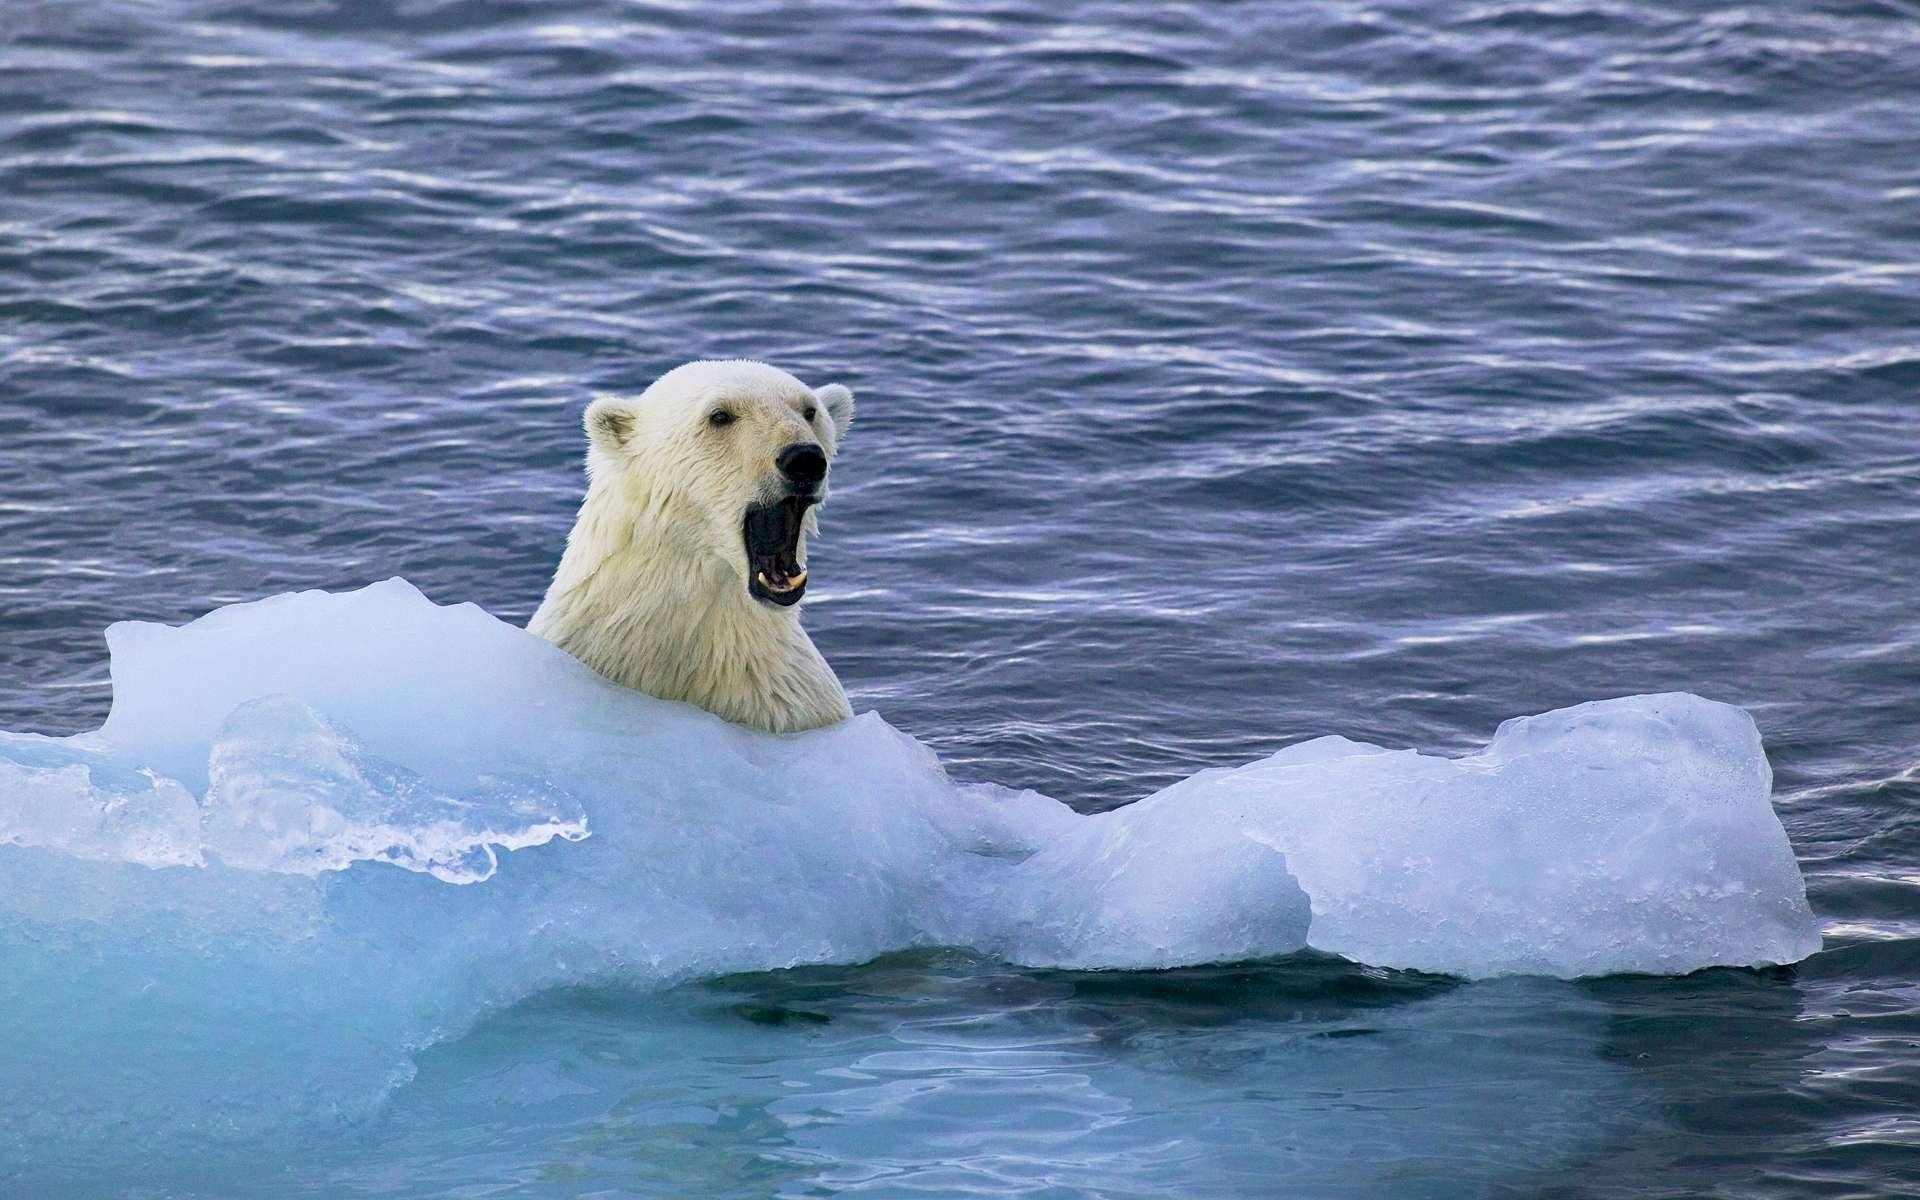 Арктика жизнь белого медведя. Северный Ледовитый океан белый медведь. Арктика Северный Ледовитый океан. Белые медведи в Арктике. Белые медведи во льдах Северного Ледовитого океана.